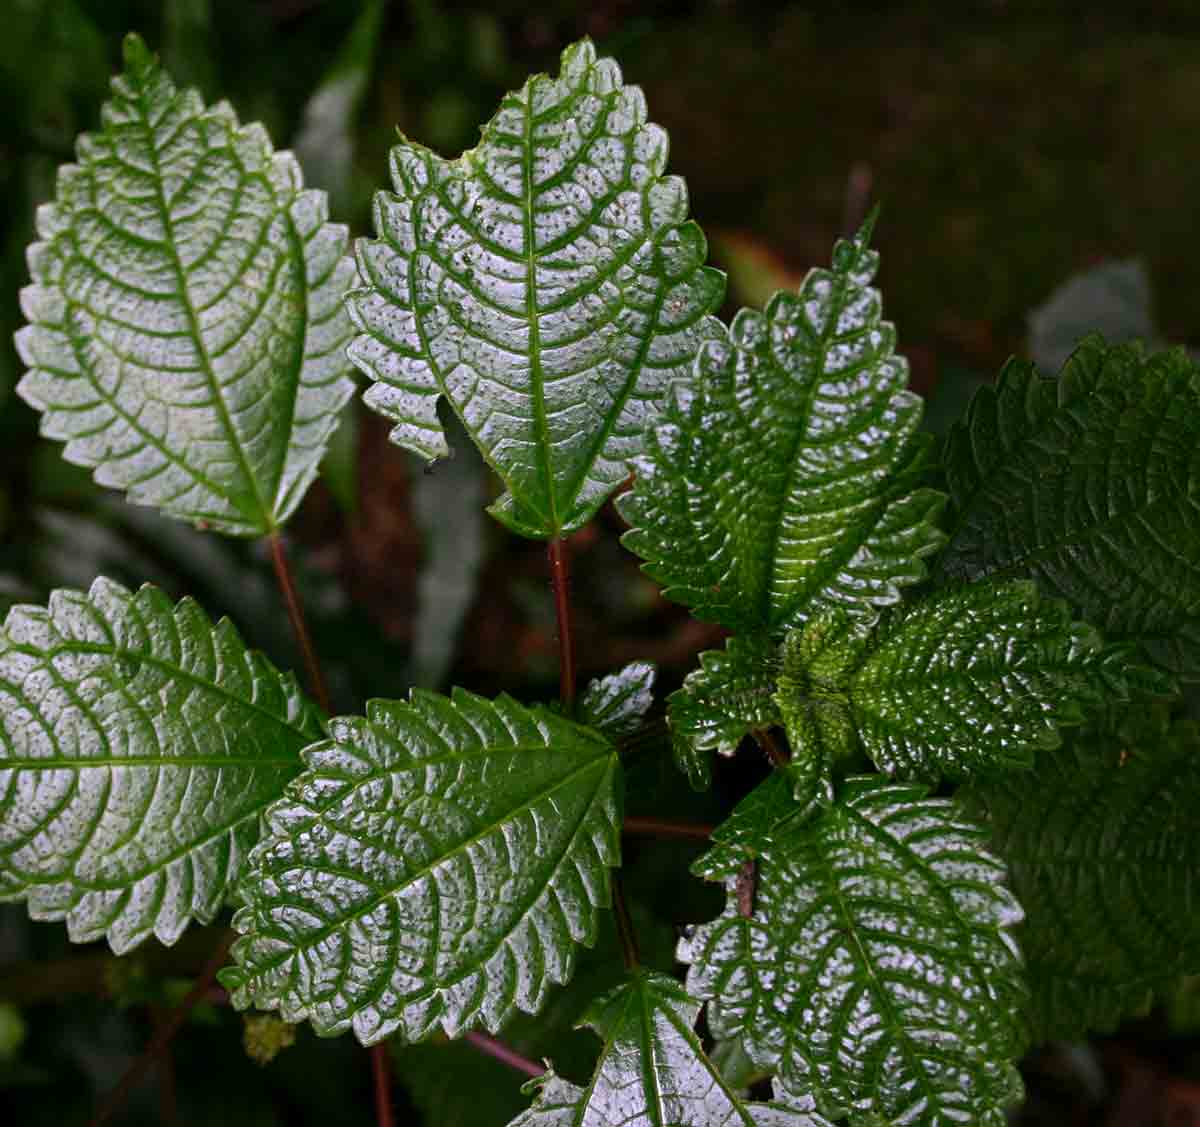 Pilea johnstonii subsp. johnstonii